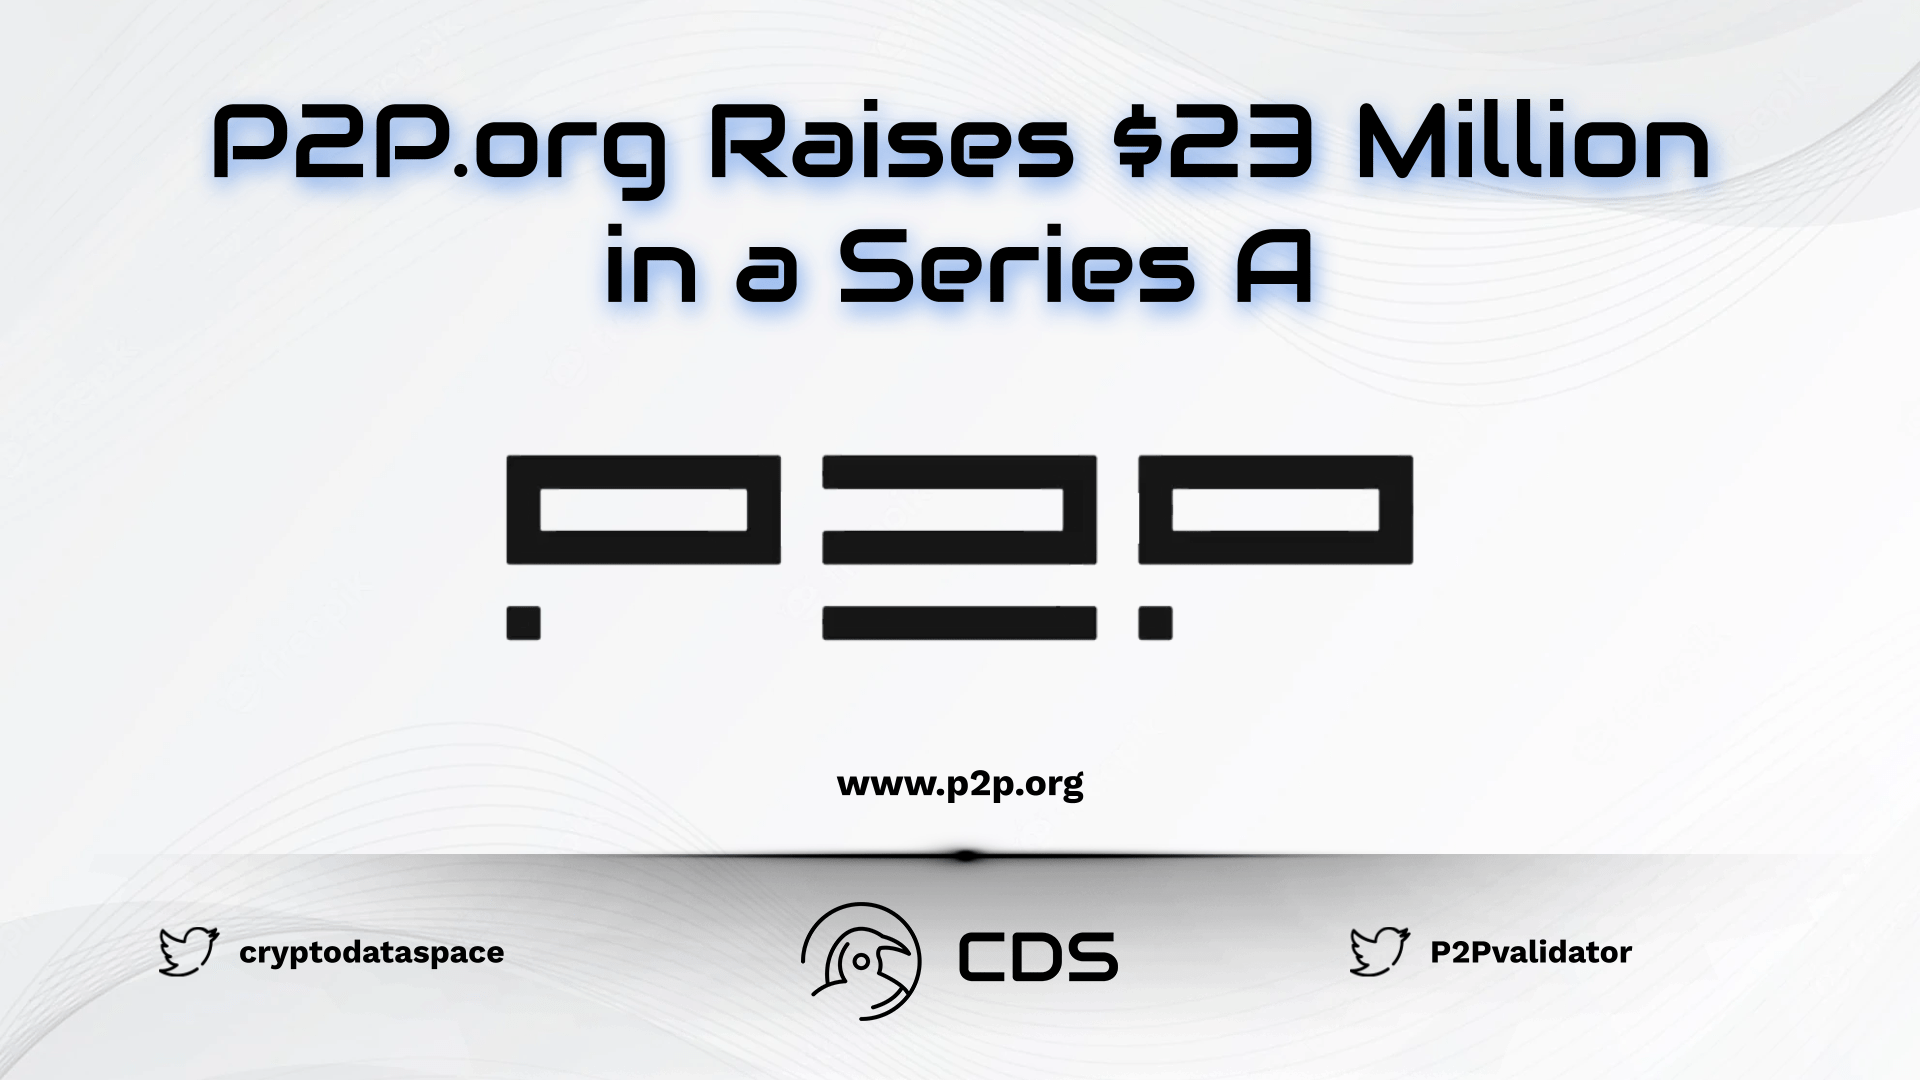 P2P.org Raises $23 Million in a Series A